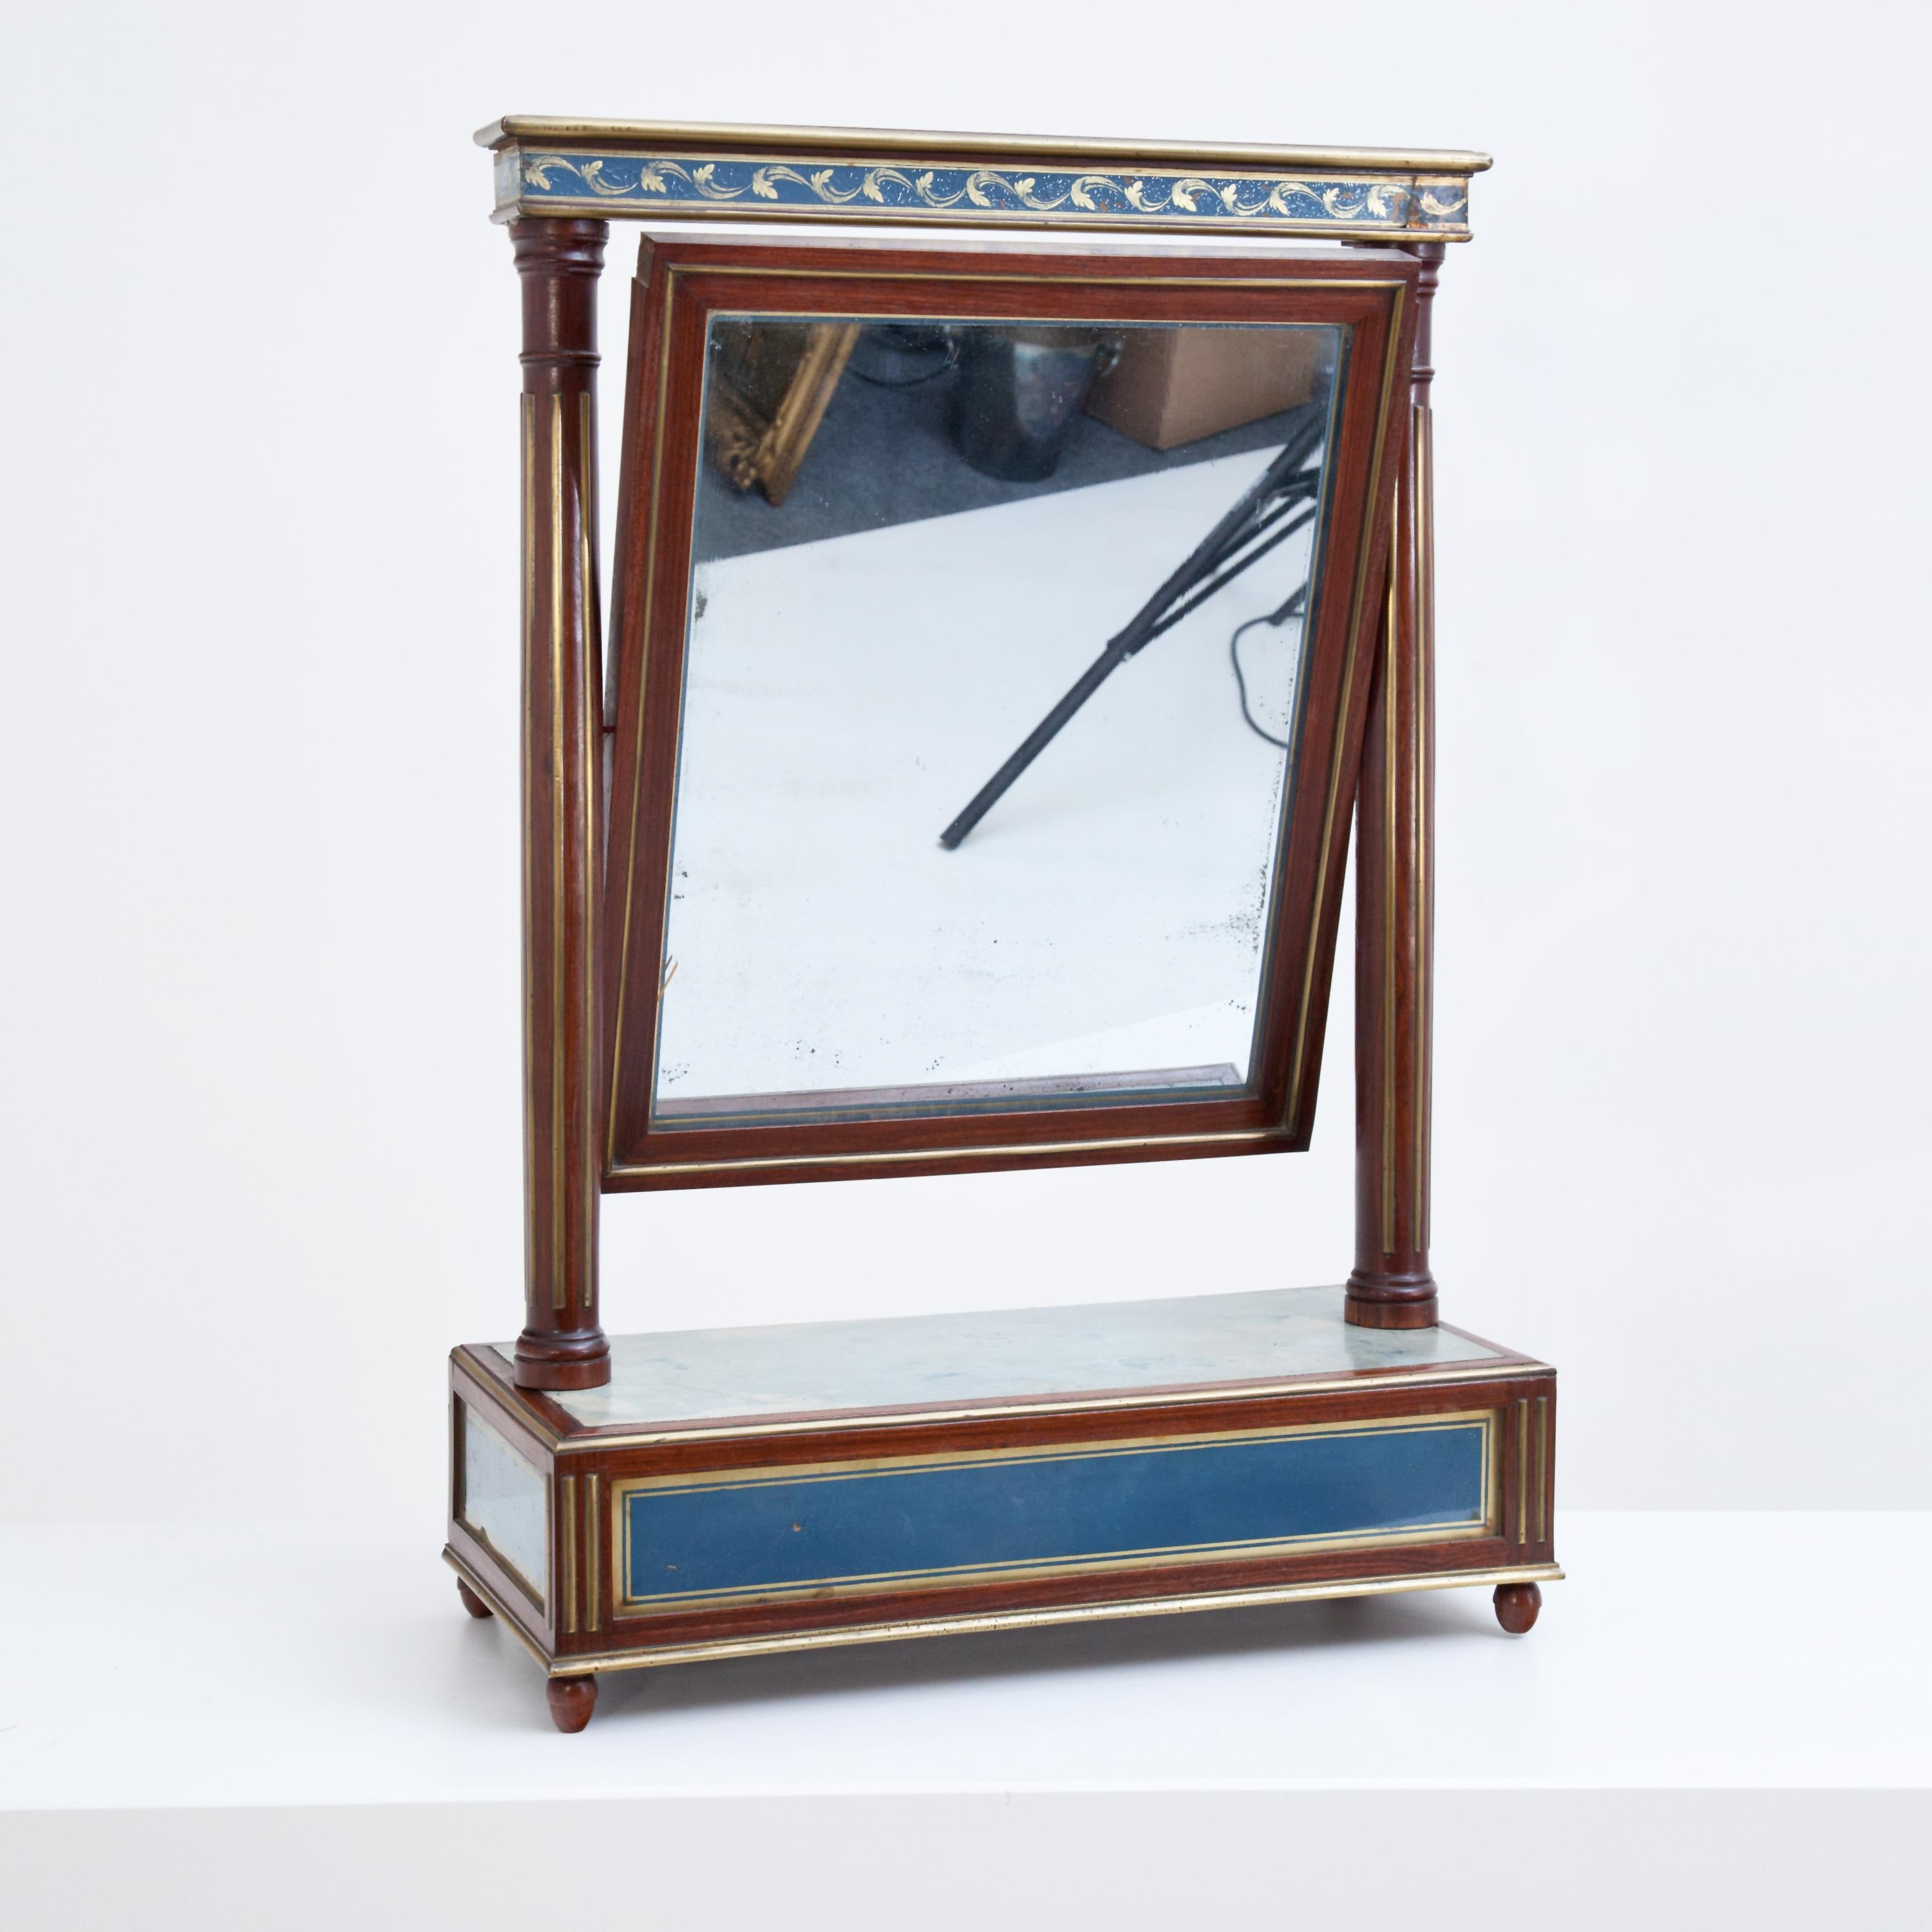 Klassizistischer Tischspiegel aus Mahagoni mit Intarsien aus Verre églomisé in Blau und Gold. Der Spiegel ist zwischen kannelierten Säulen mit geradem Architrav und Zapfen montiert.